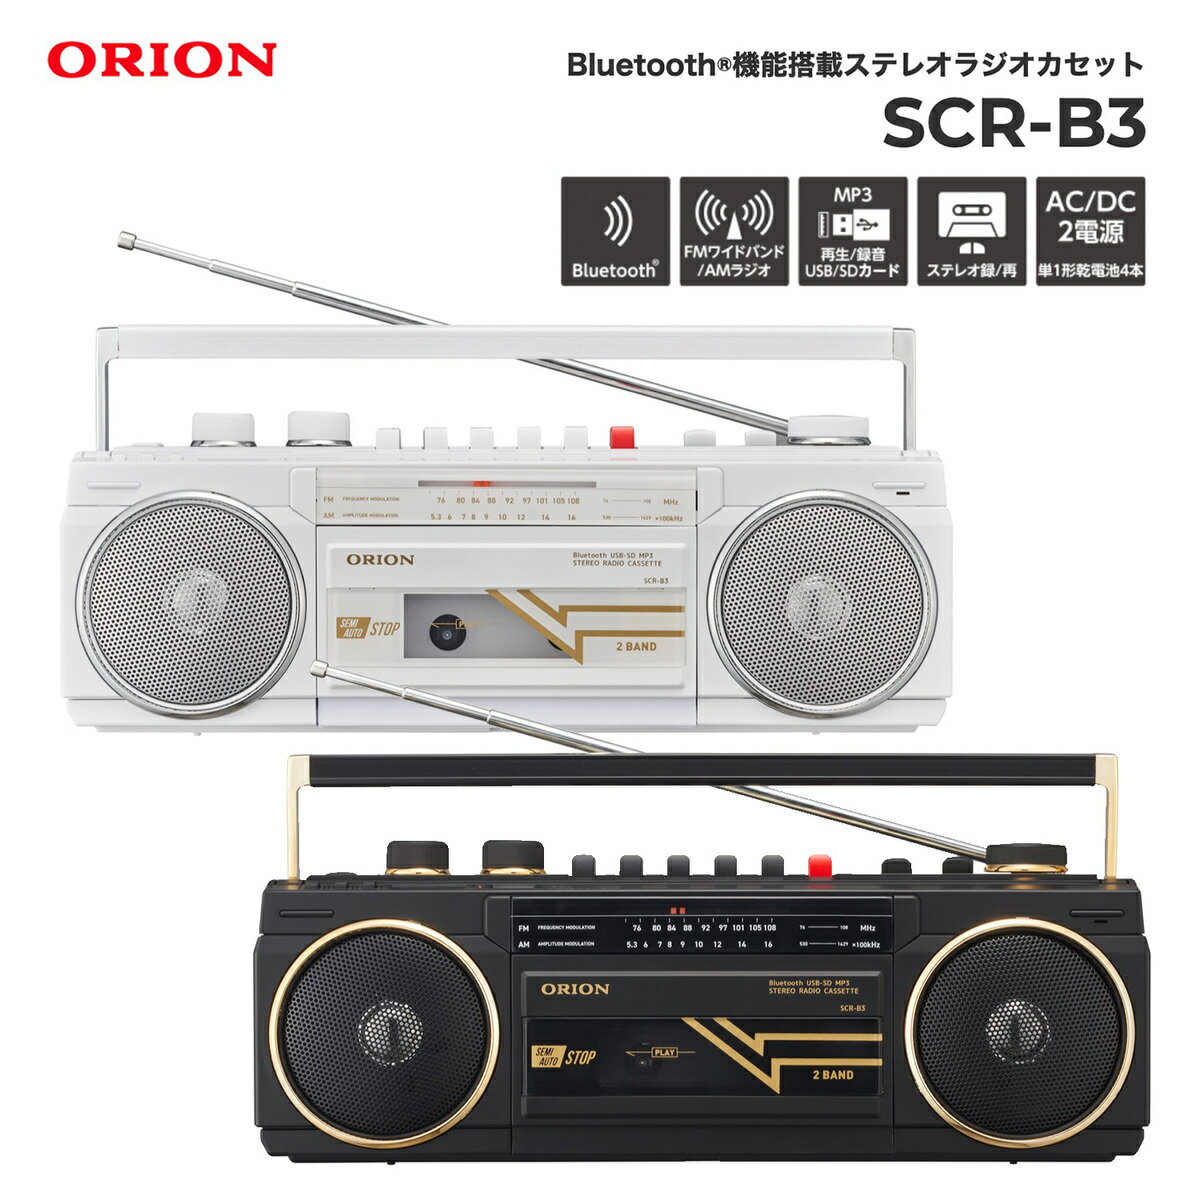 ORION SCR-B3 ラジカセ Bluetooth 対応 ラジオカセットレコーダー 録音 再生 SDカード ラジオ AM FM カセットテープ USBメモリ MP3 乾電池 コンセント ブラック ホワイト makuake マクアケ ドウシシャ オリオン (08)